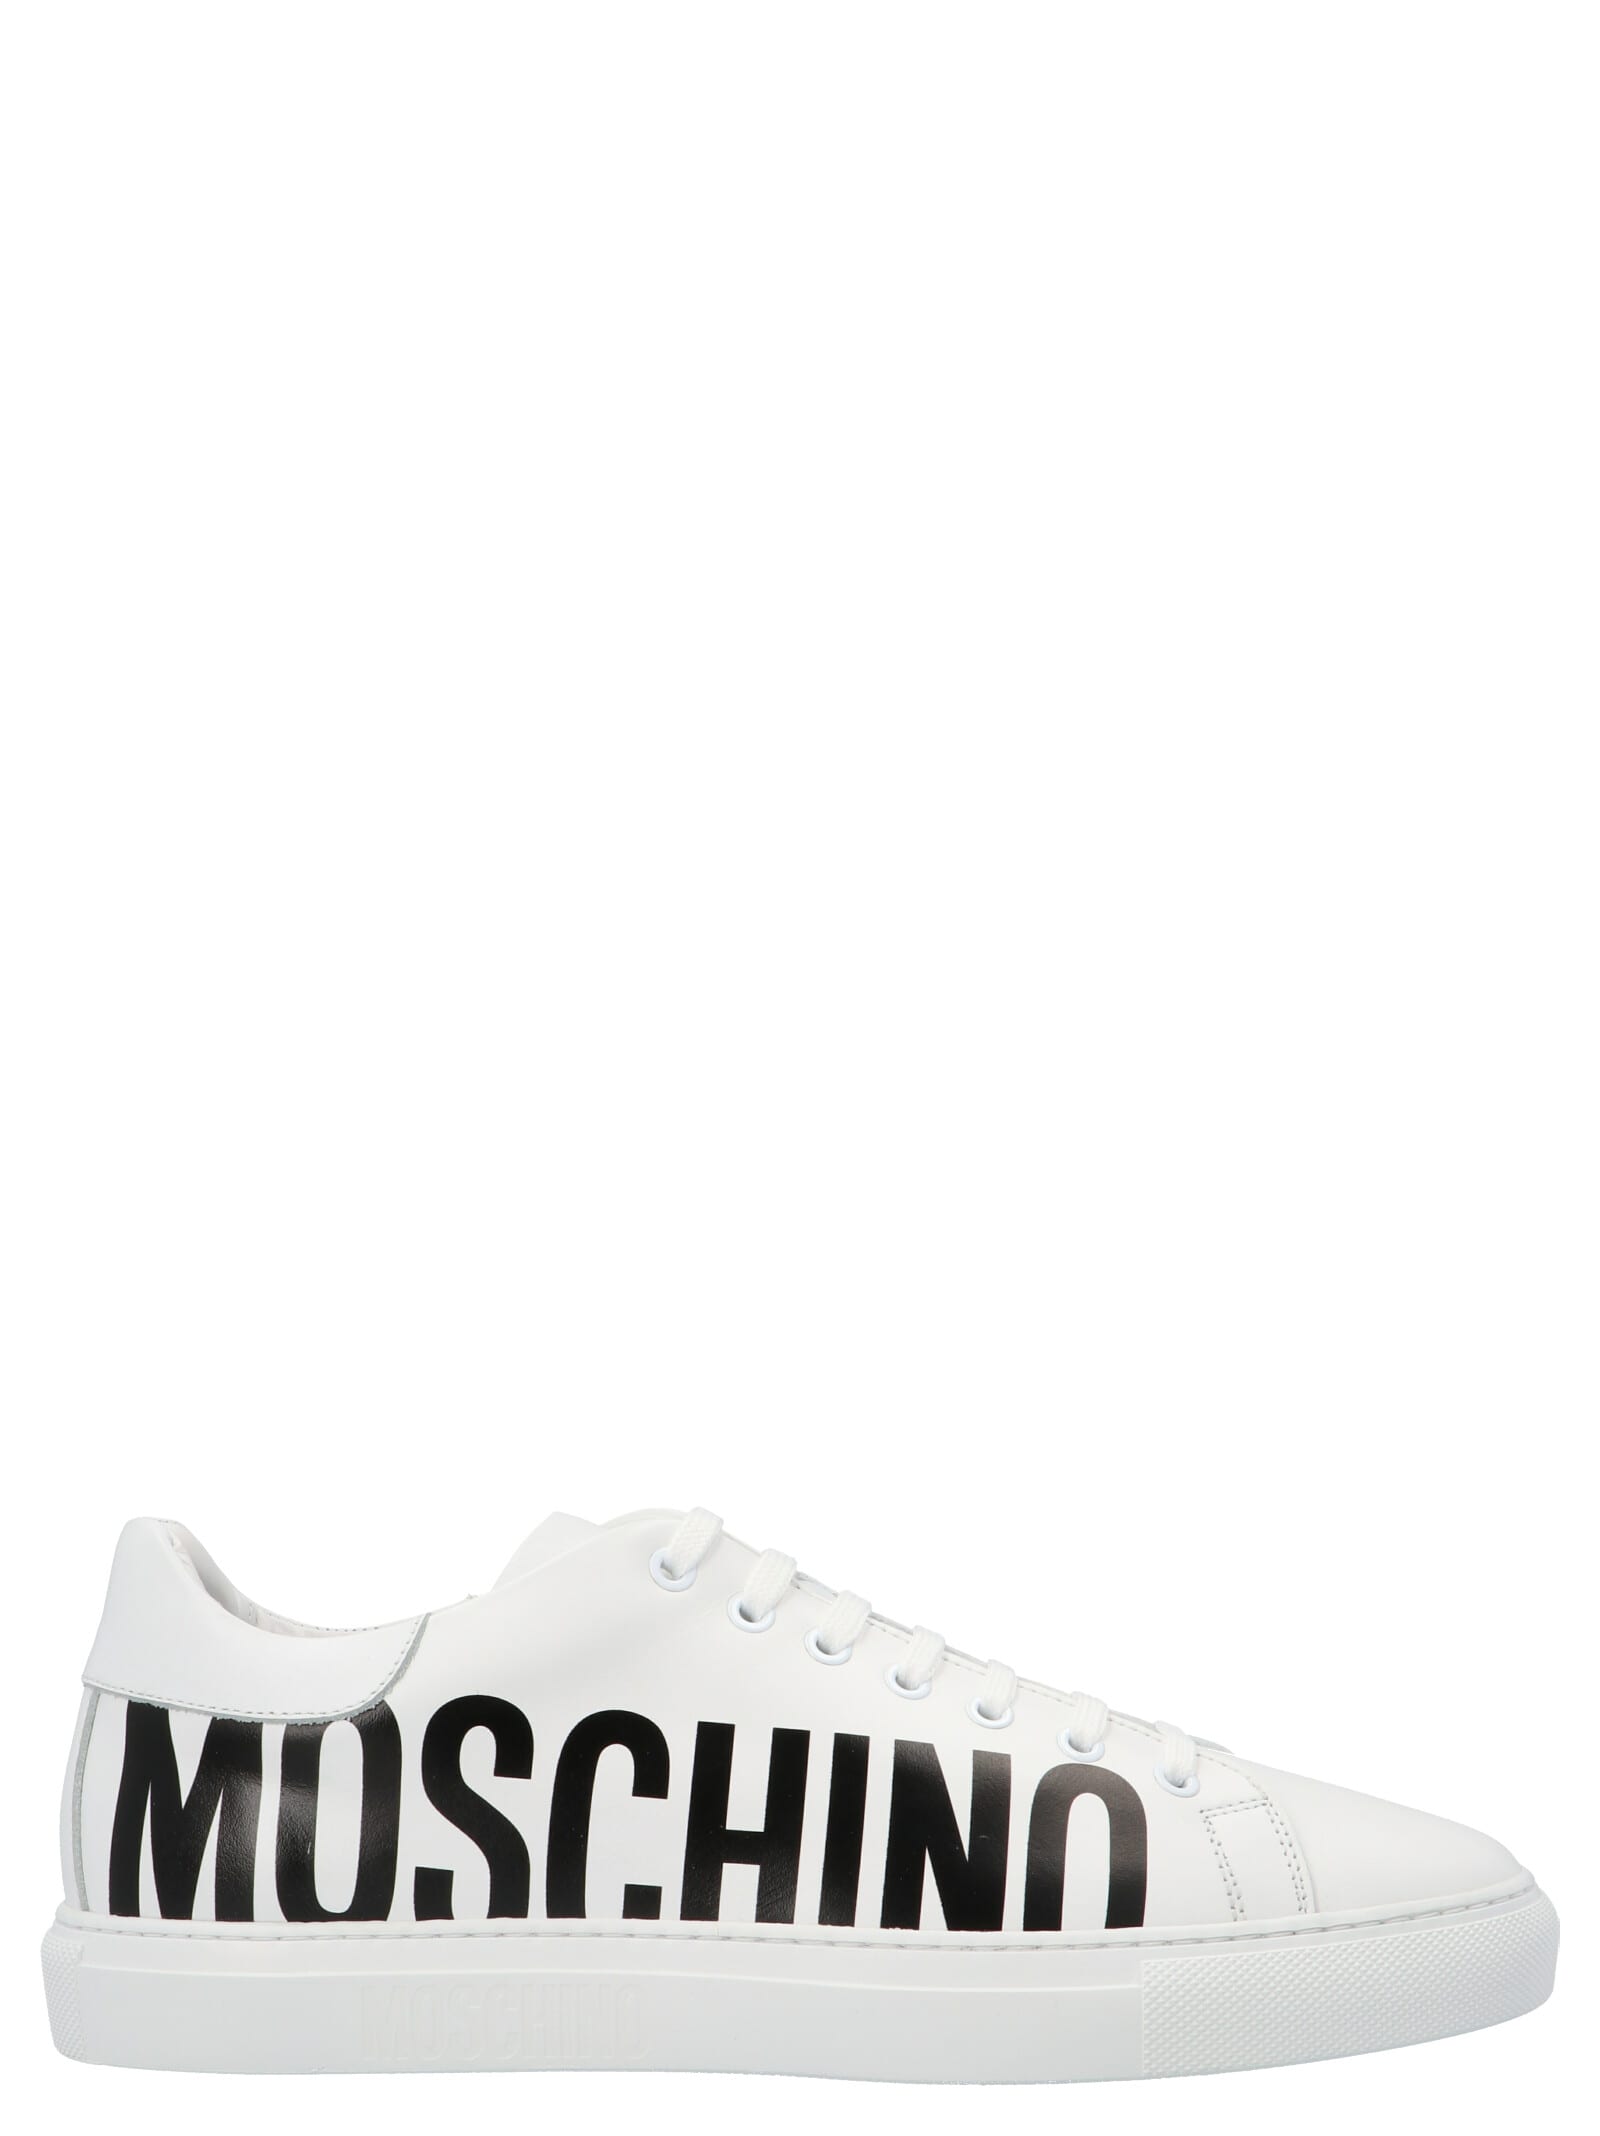 Moschino serena Shoes